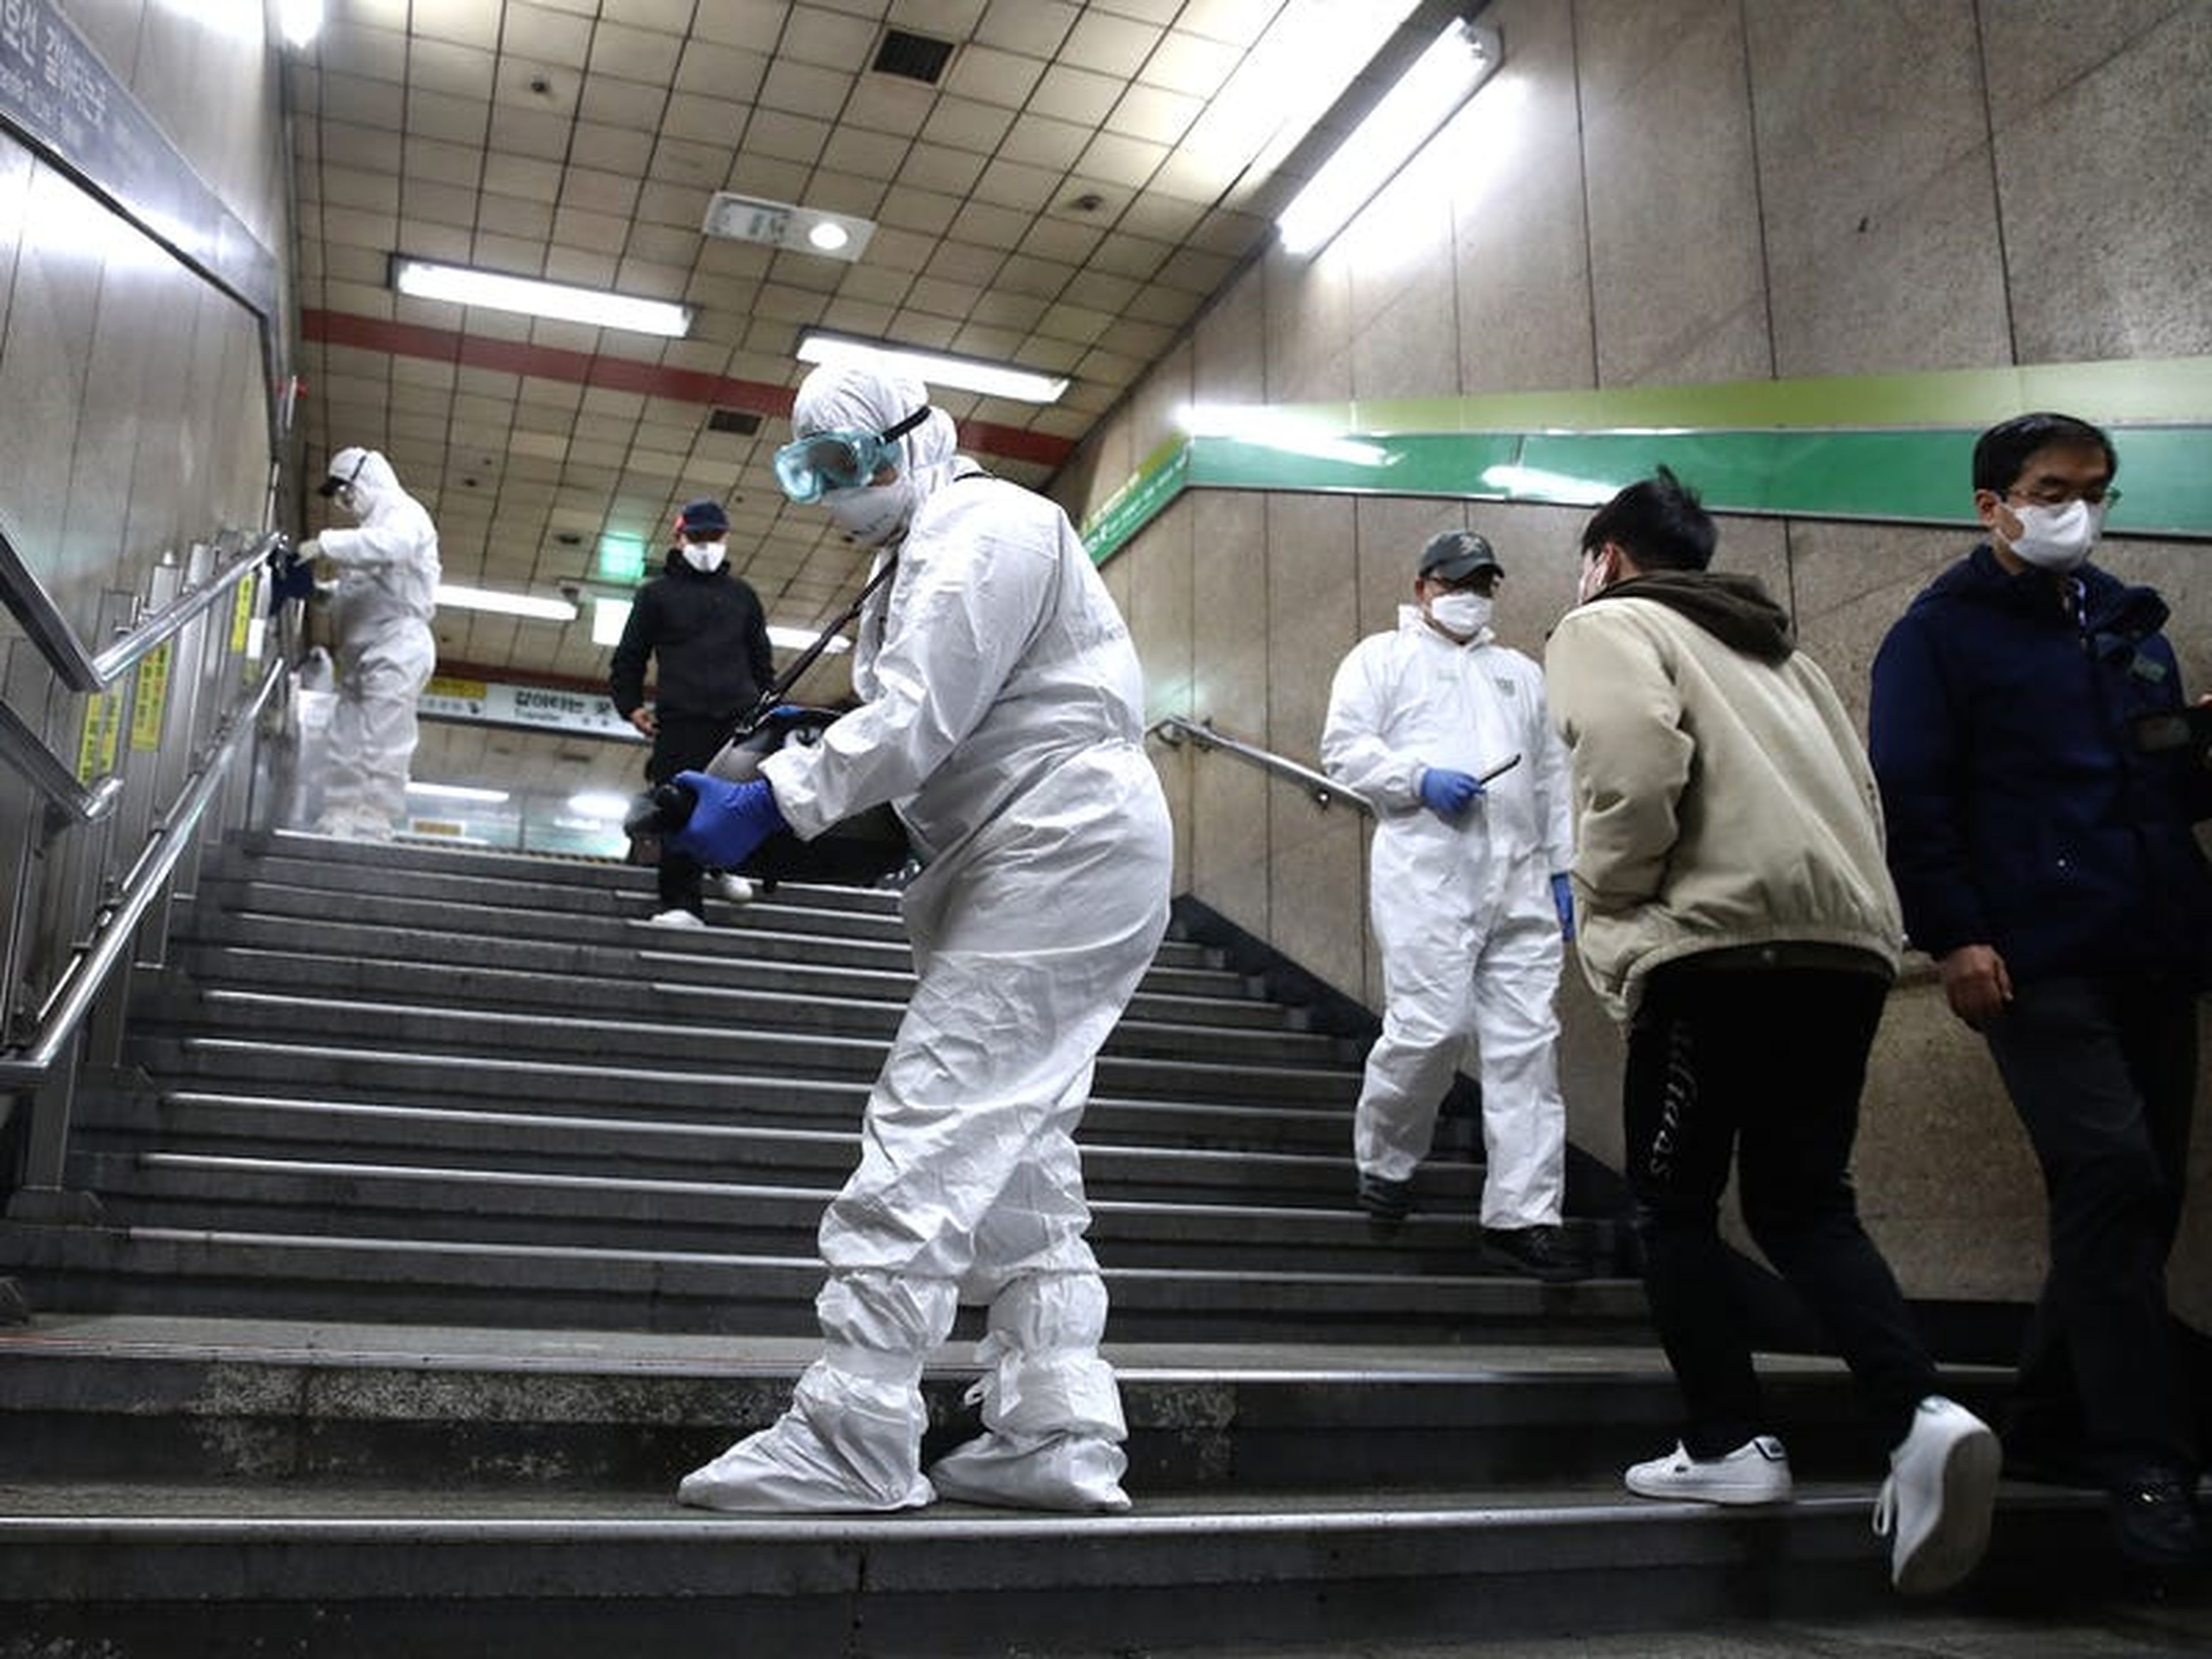 Los trabajadores en equipo de protección desinfectan para combatir el coronavirus en una estación de metro en Seúl, Corea del Sur, el 21 de febrero de 2020.